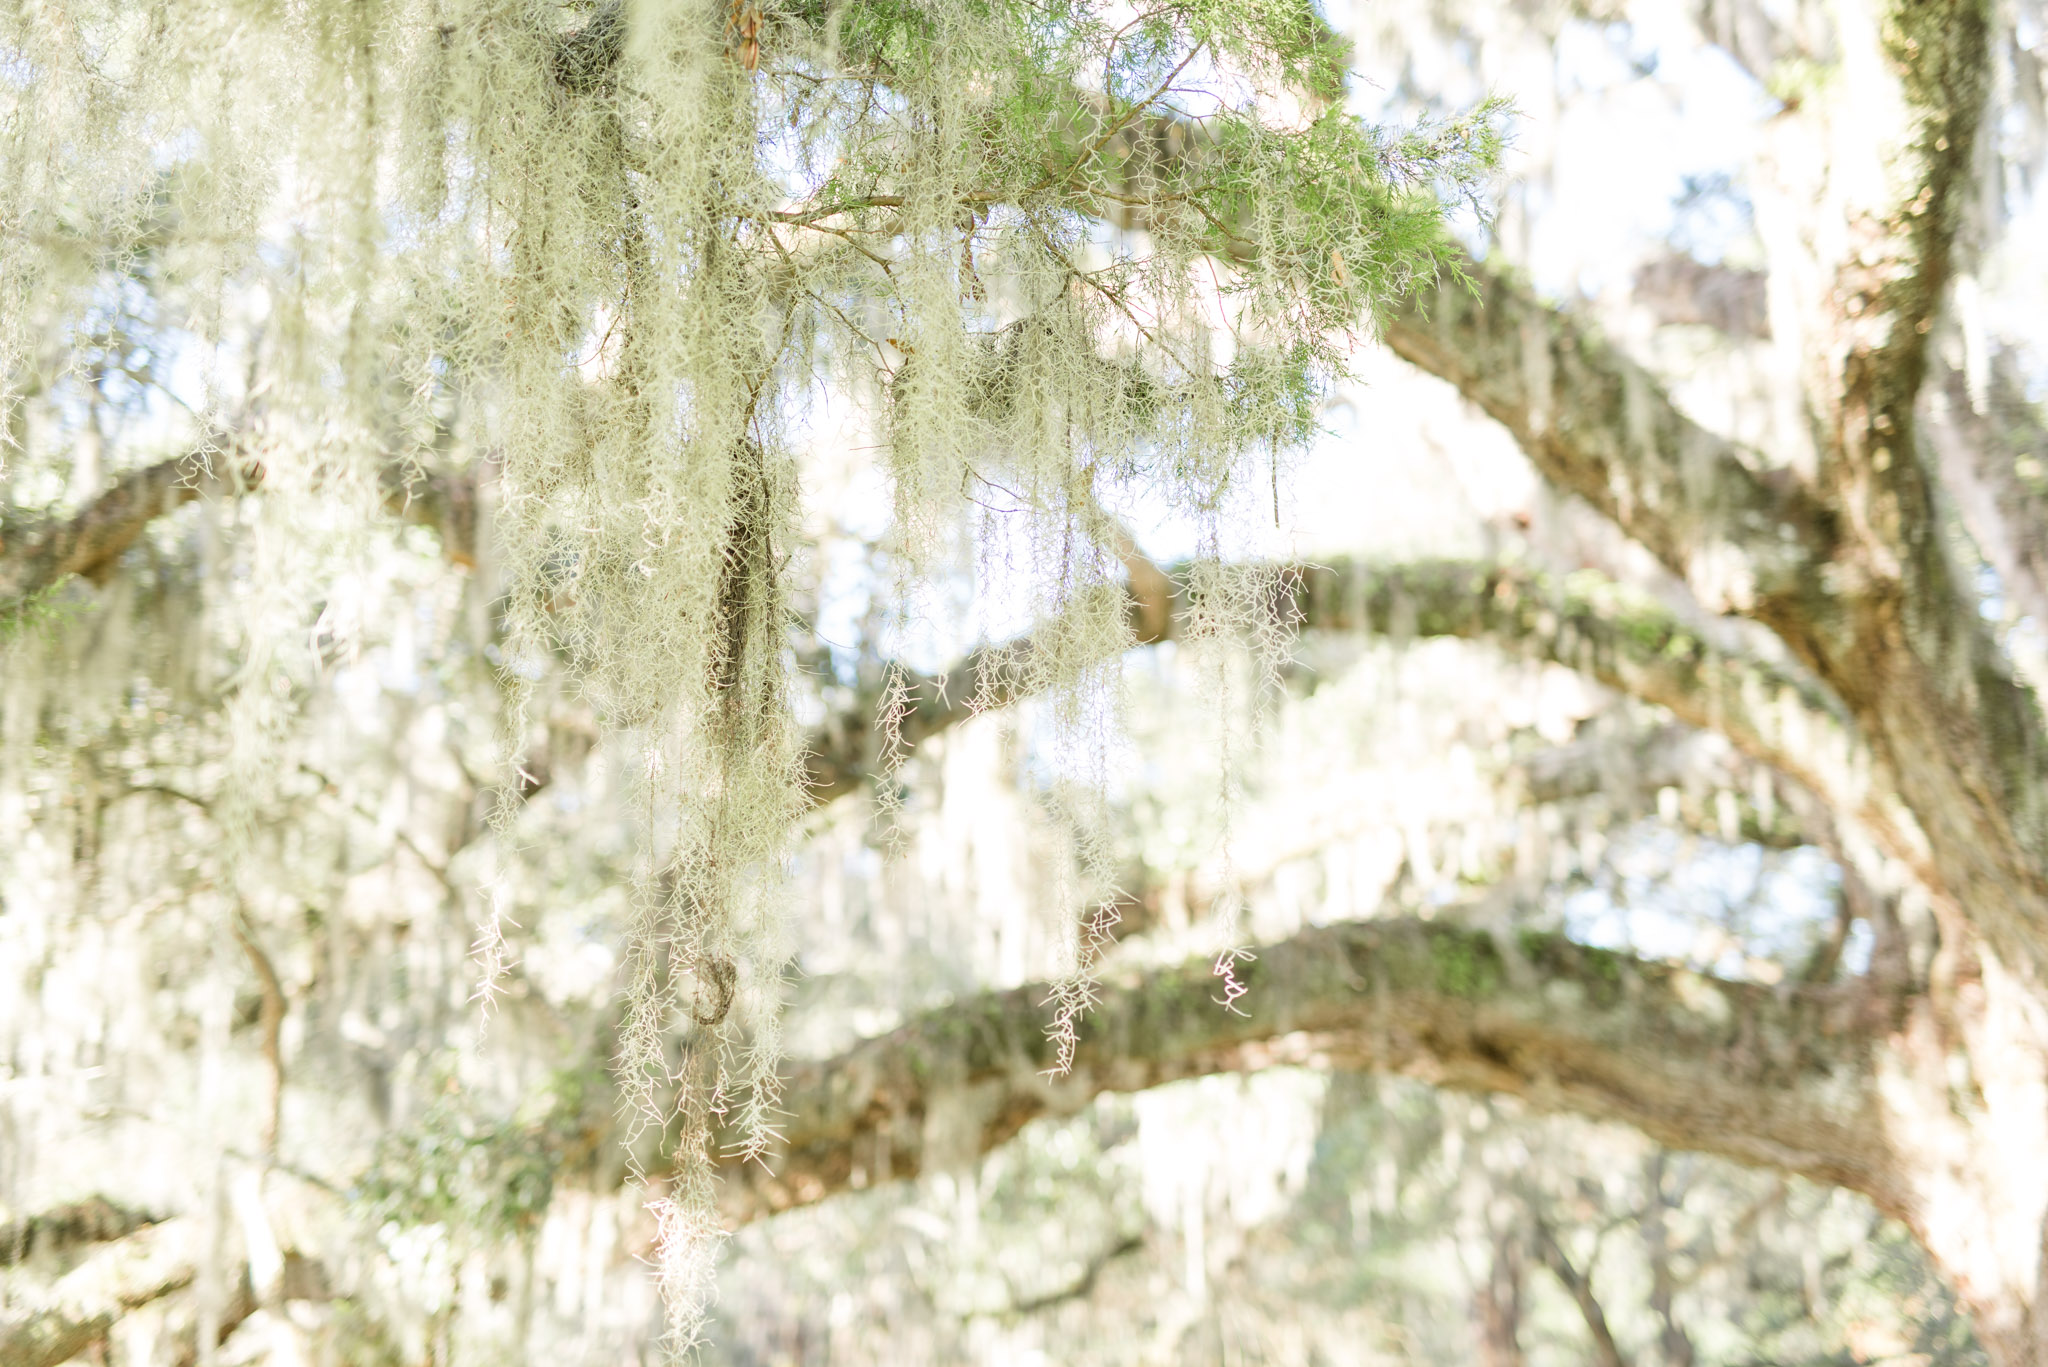 Charleston Spanish moss hanging from tree